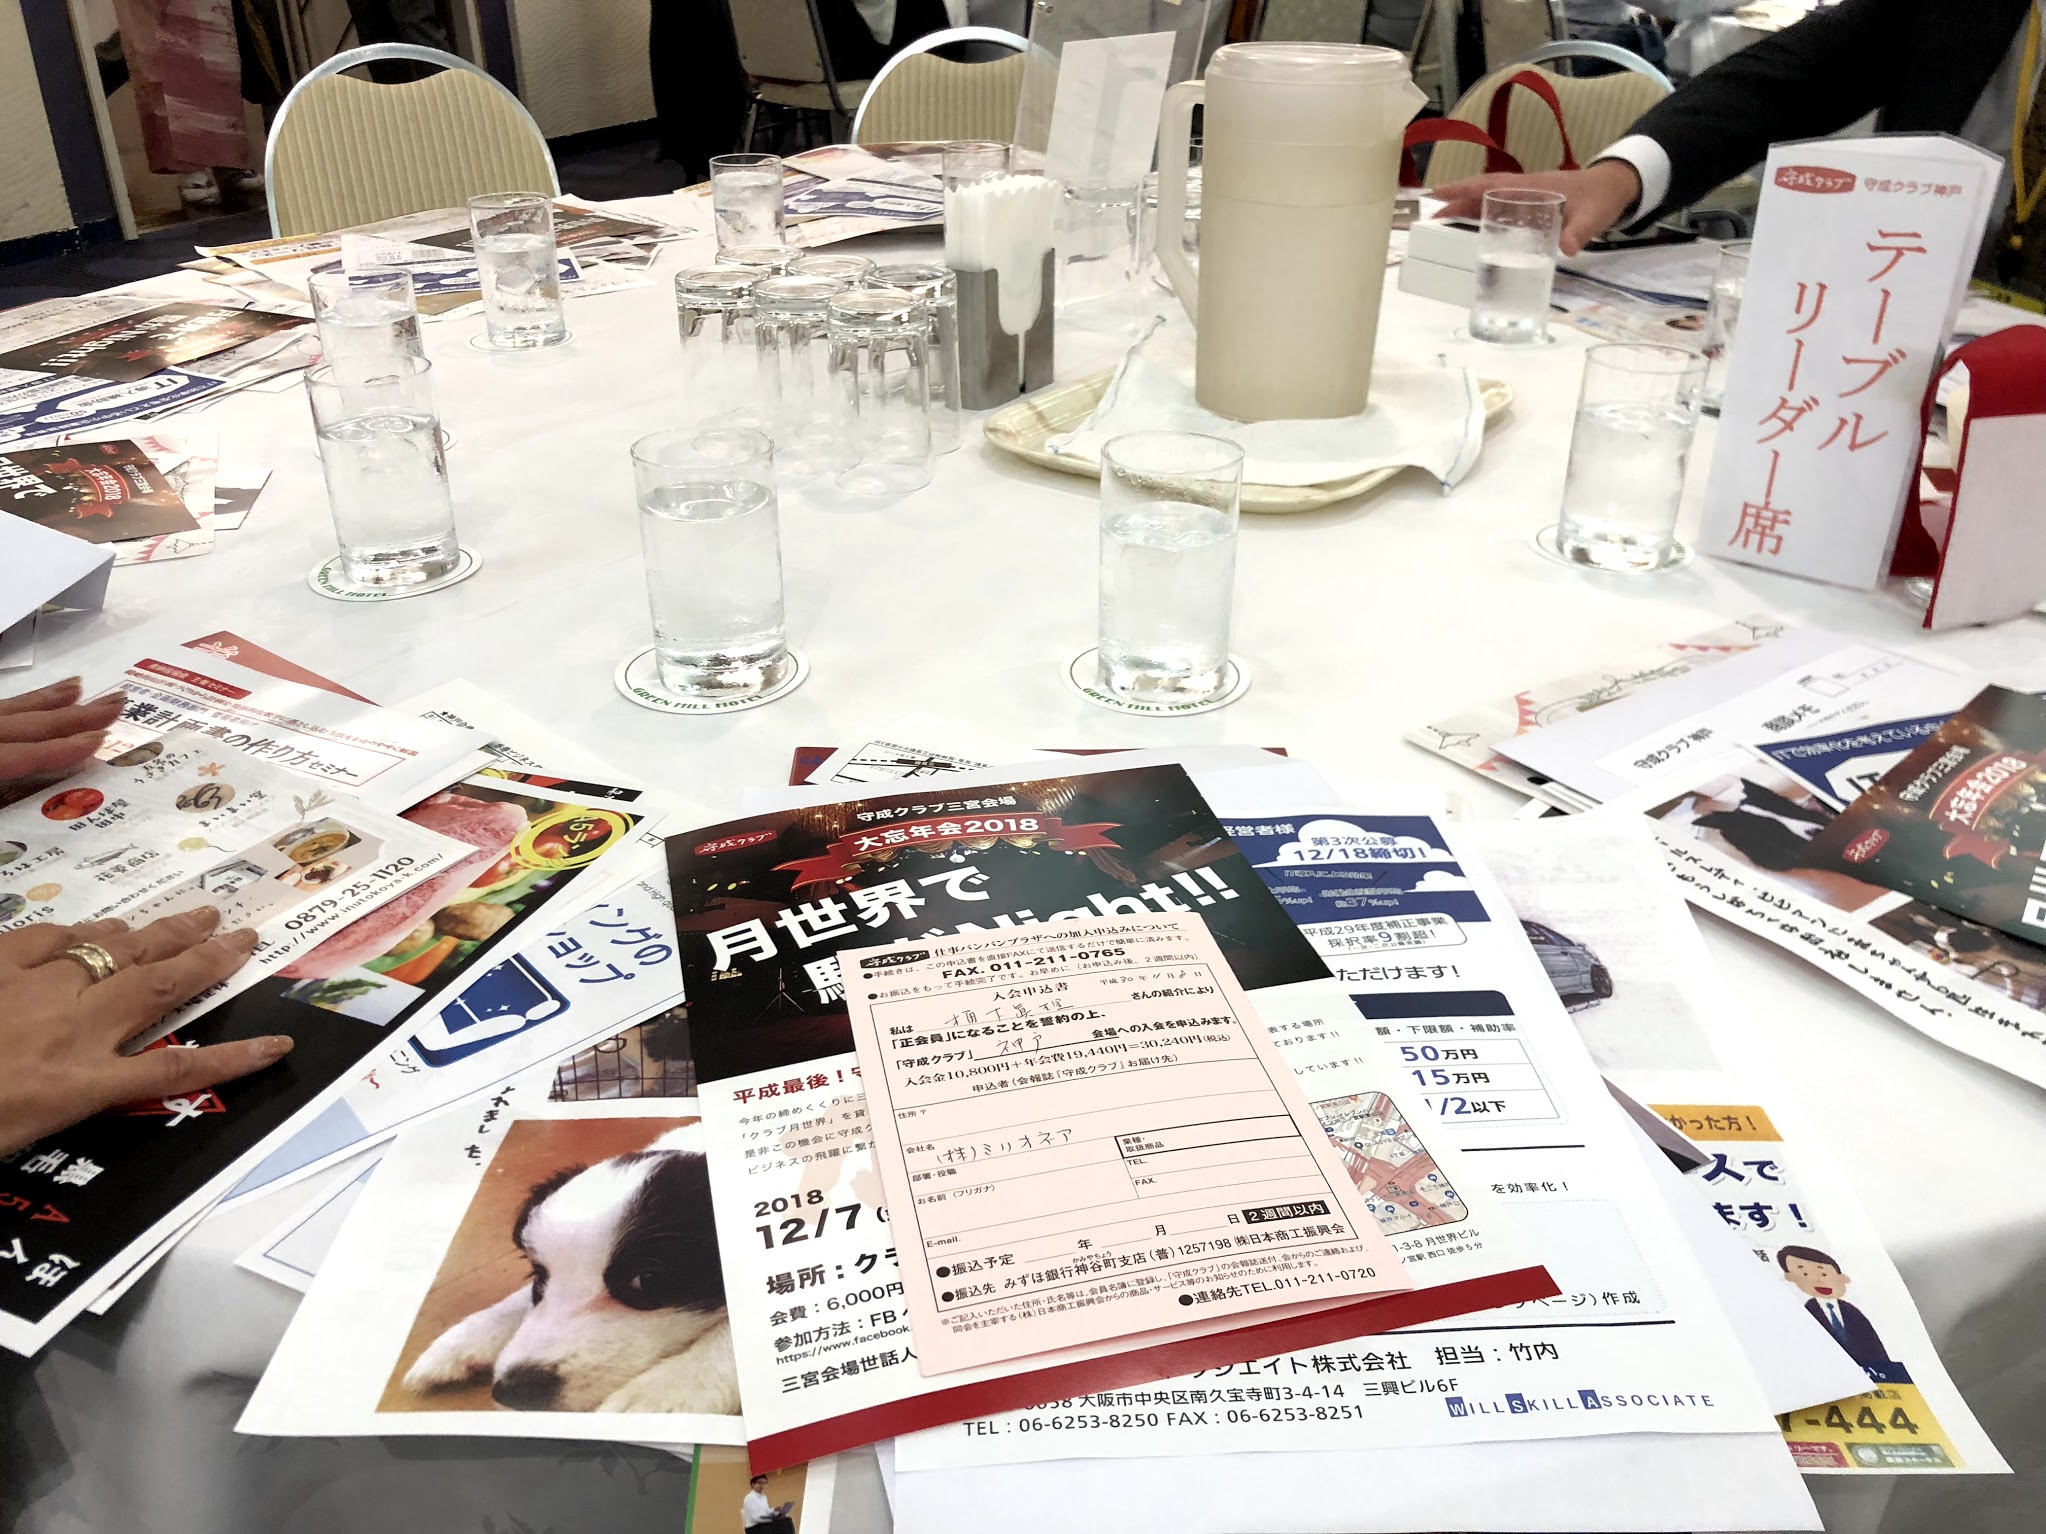 守成クラブ神戸:ビジネス交流会のでのプレゼン